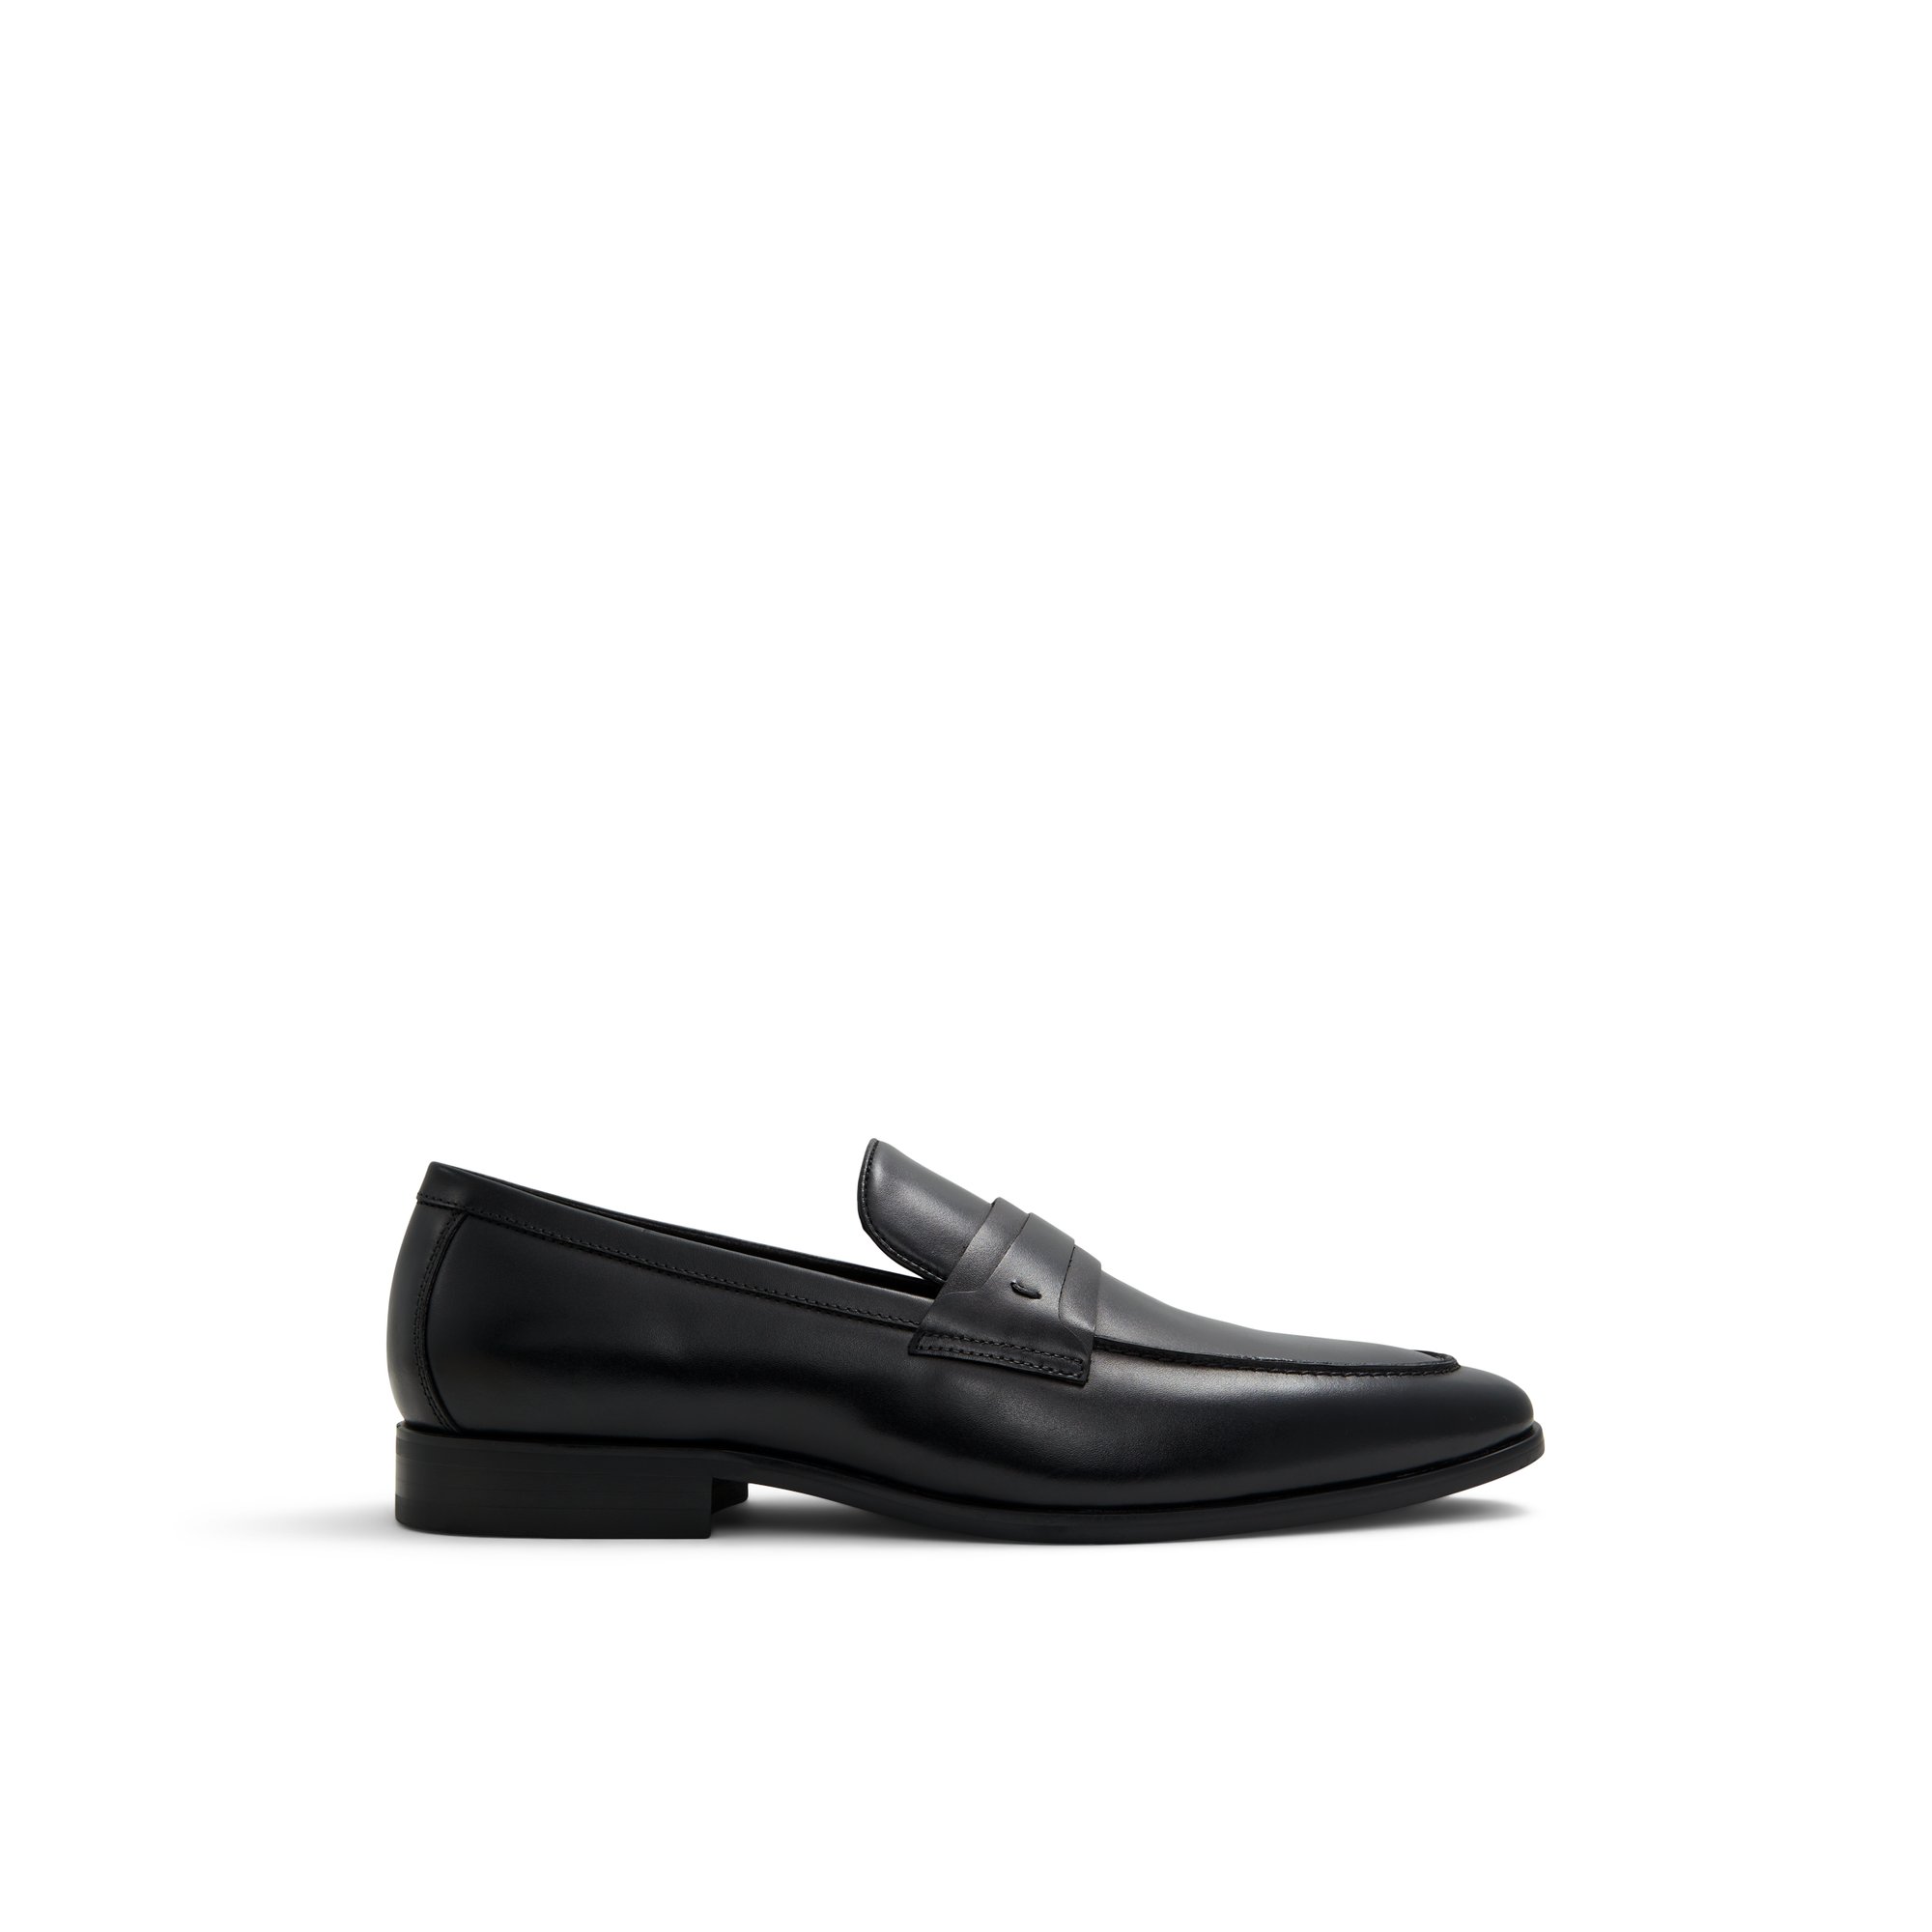 ALDO Ferro - Men's Loafers and Slip Ons - Black